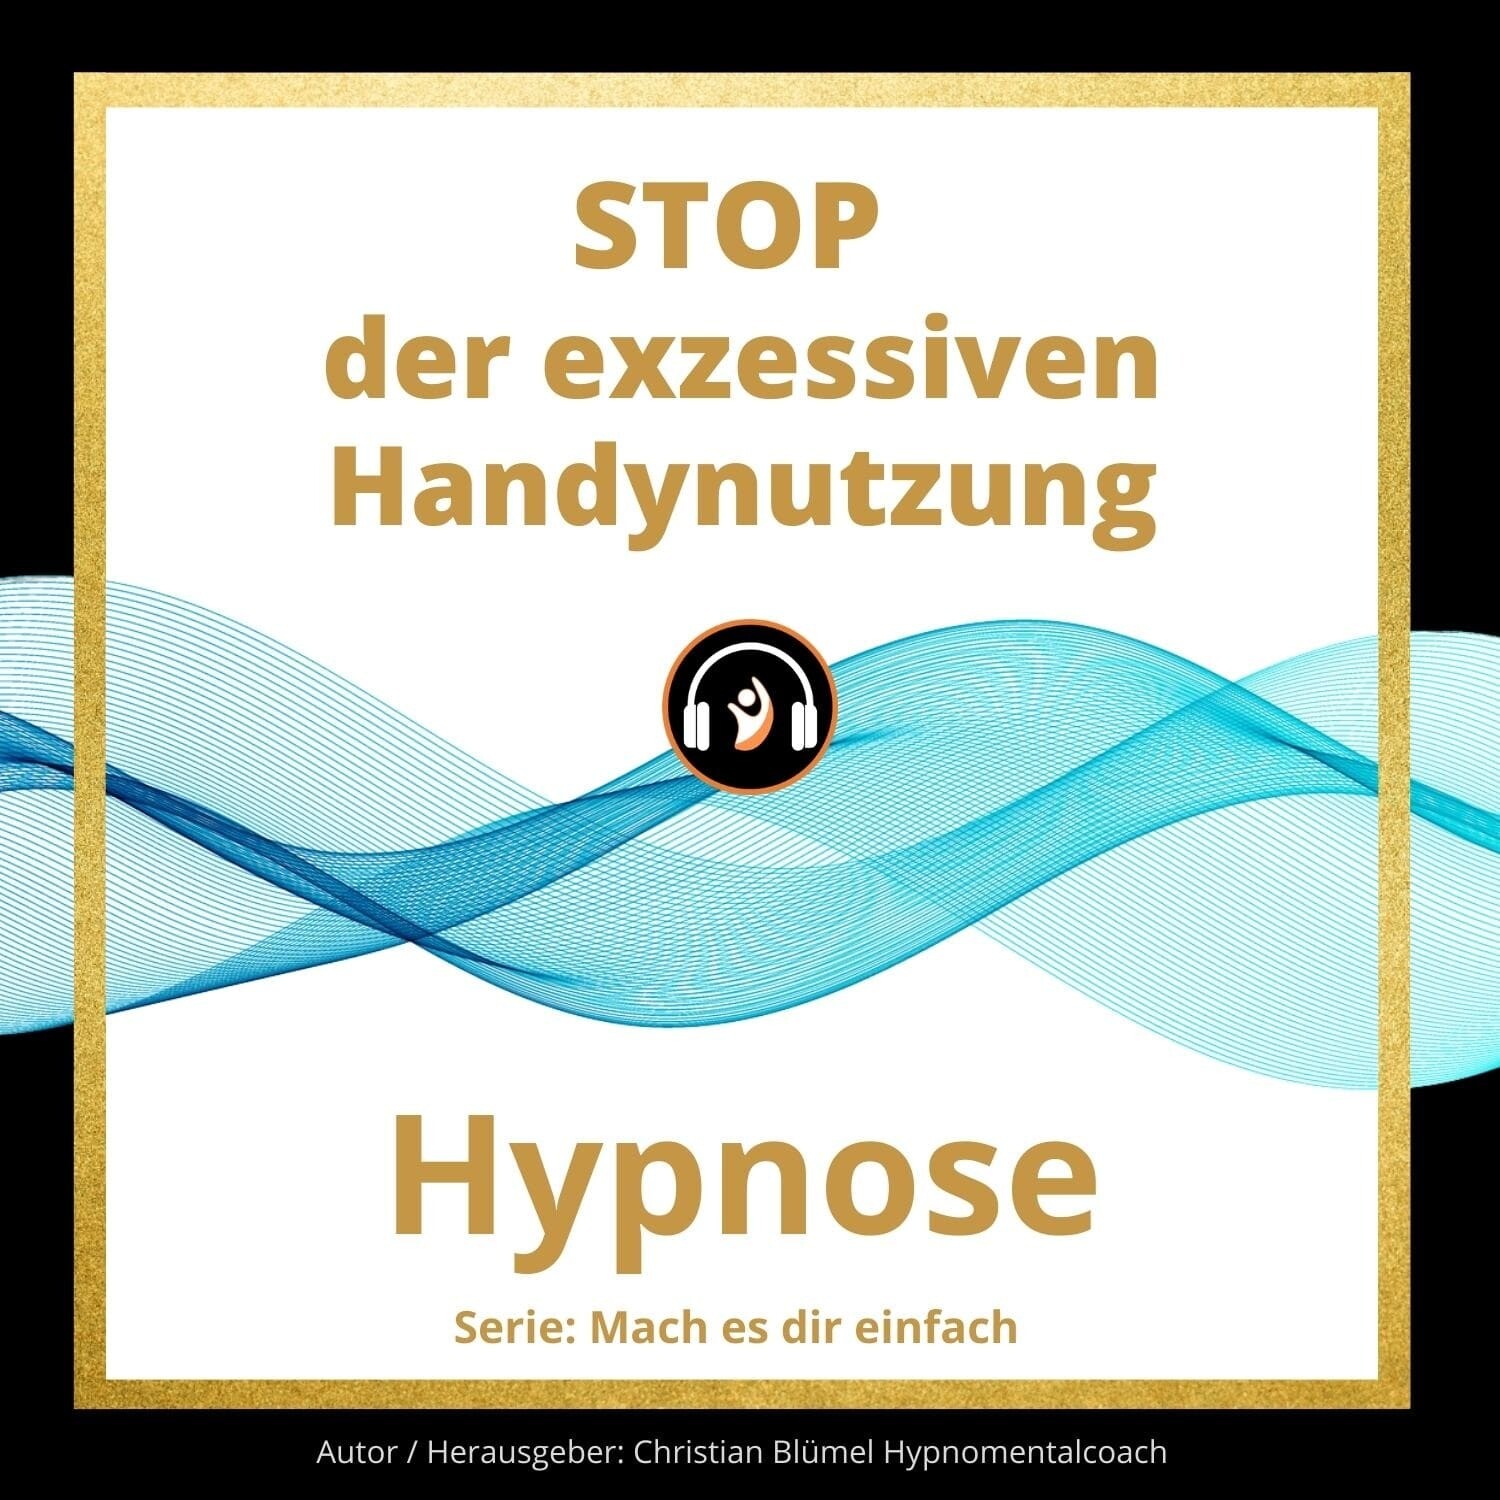 Audio Hypnose: STOP der exzessiven Handynutzung